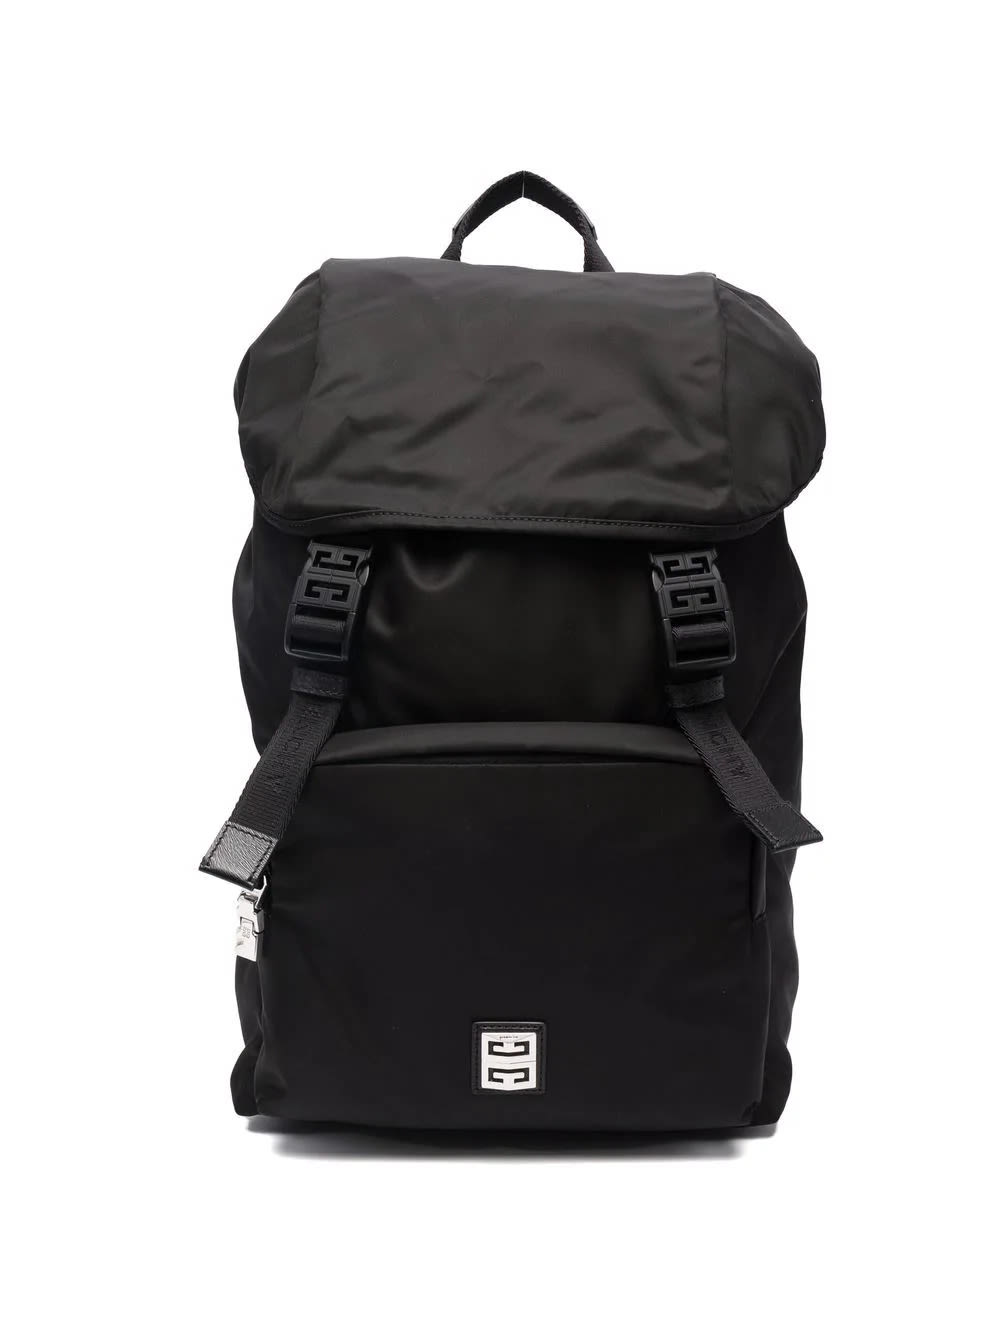 Givenchy Man Black Light 4g Backpack